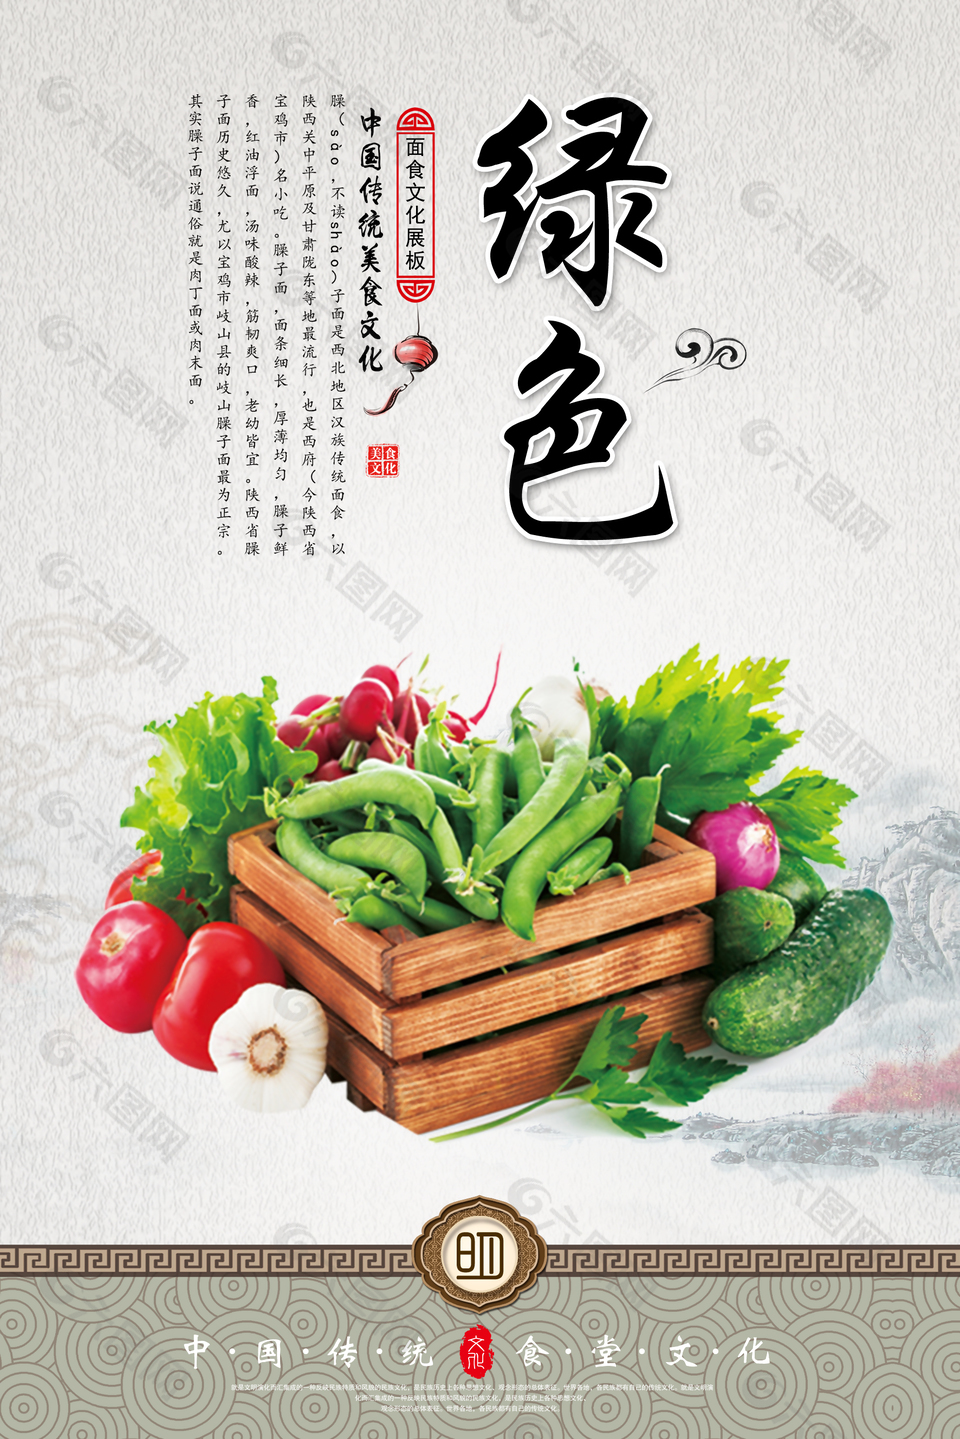 传统食堂文化果蔬创意海报模板